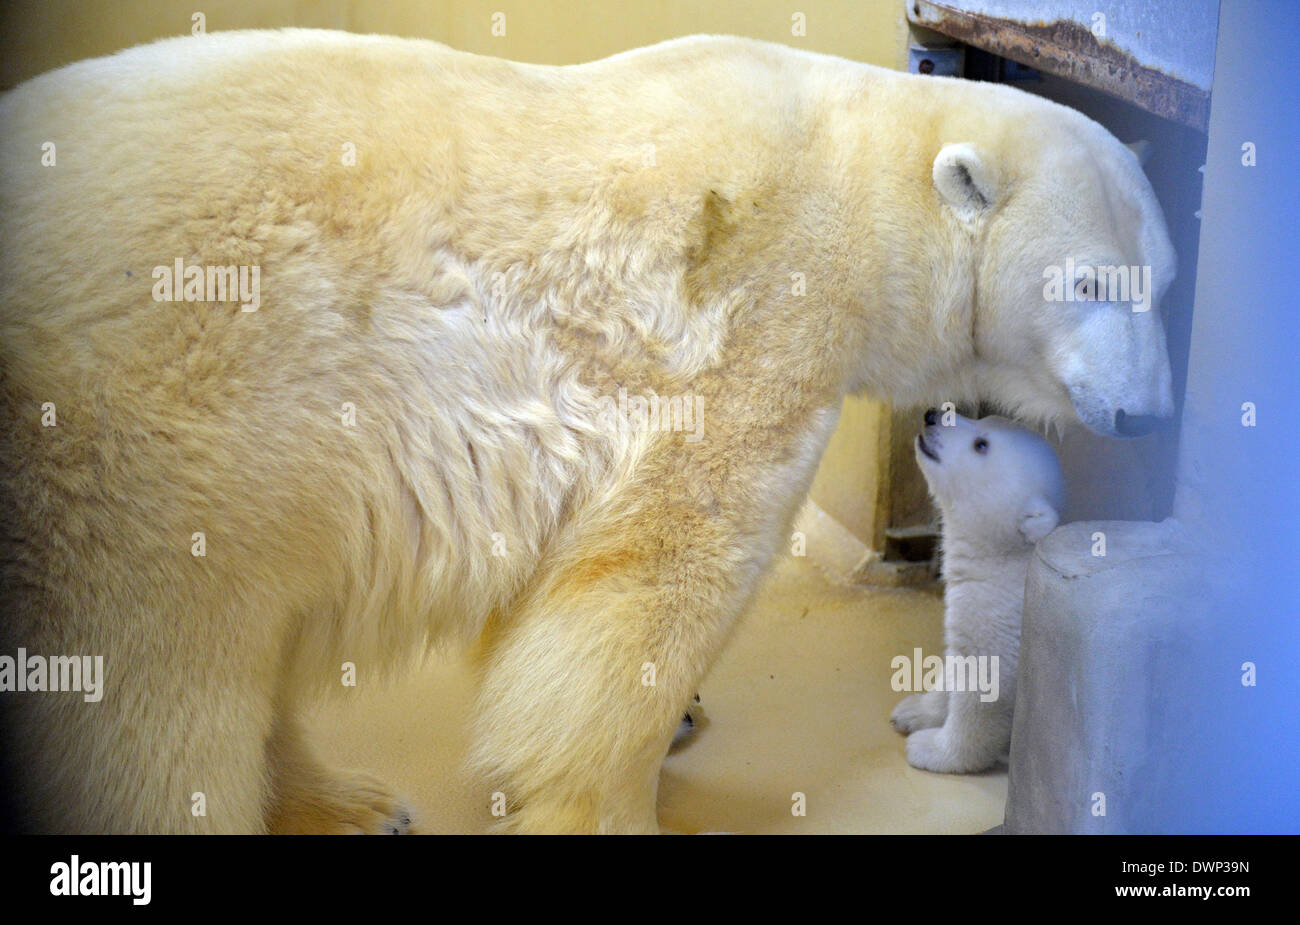 Bremerhaven, Deutschland. 12. März 2014. Ein Eisbär-Baby spielt mit seiner Mutter Valeska in der "Zoo am Meer" (lit.) Zoo am Meer) in Bremerhaven, Deutschland, 12. März 2014. Die weiblichen Polar Bear Cub wurde am 16. Dezember 2013 geboren und jetzt lässt seine Geburt Höhle zum ersten Mal. Foto: CARMEN JASPERSEN/Dpa/Alamy Live News Stockfoto